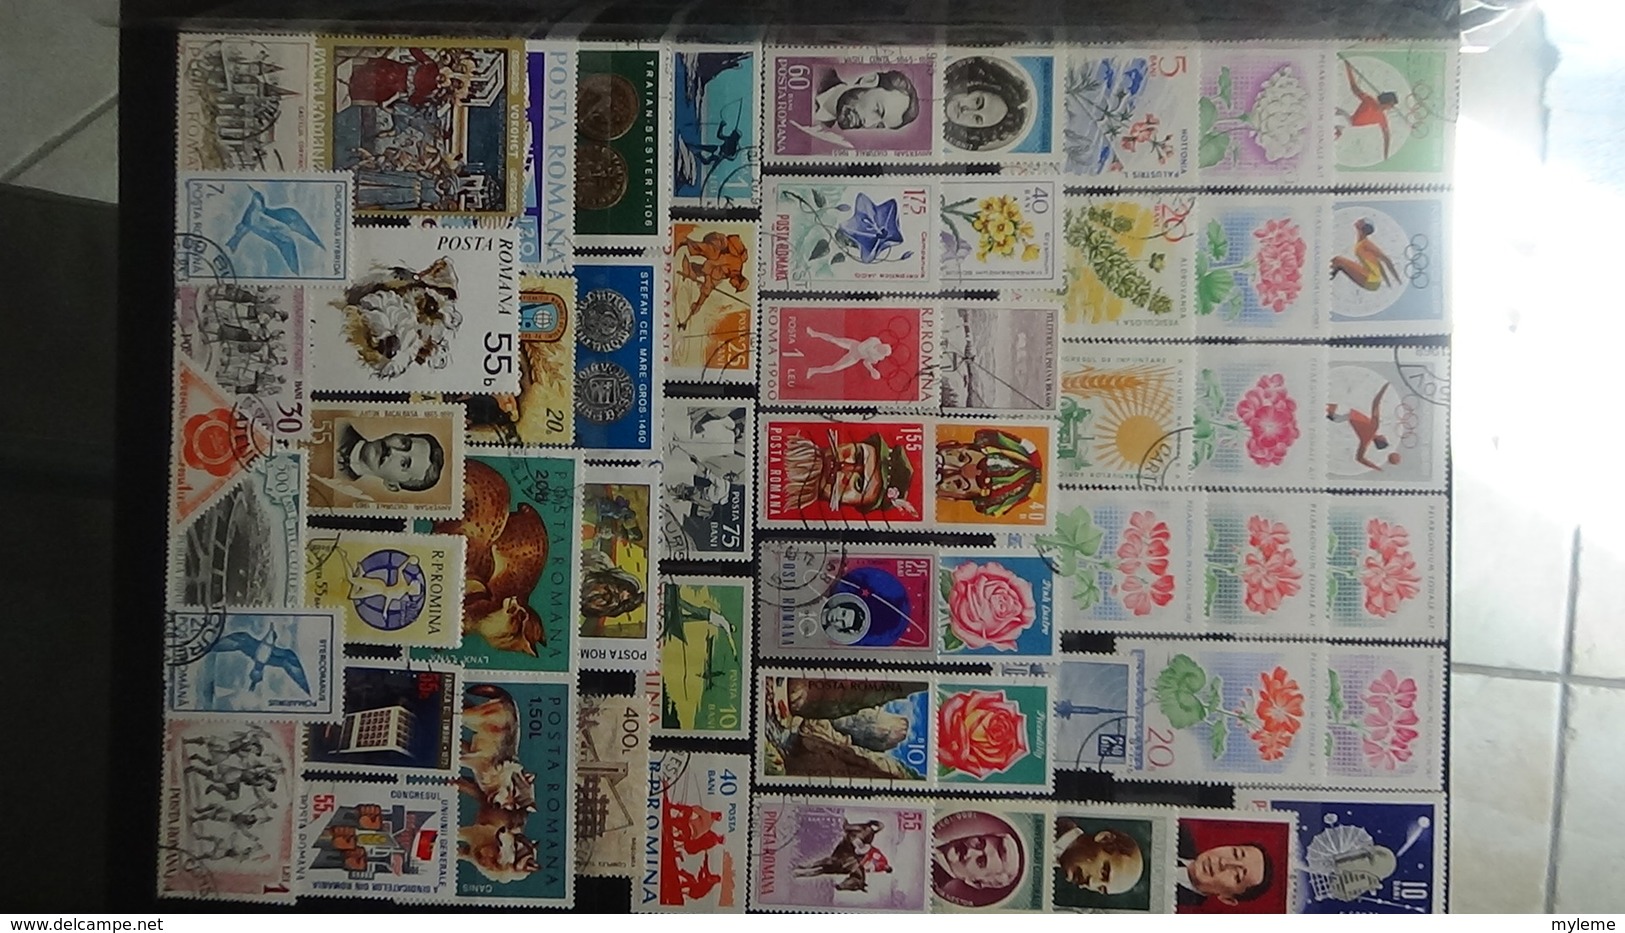 Beaux blocs ** et timbres tous étas de CHINE et tous pays